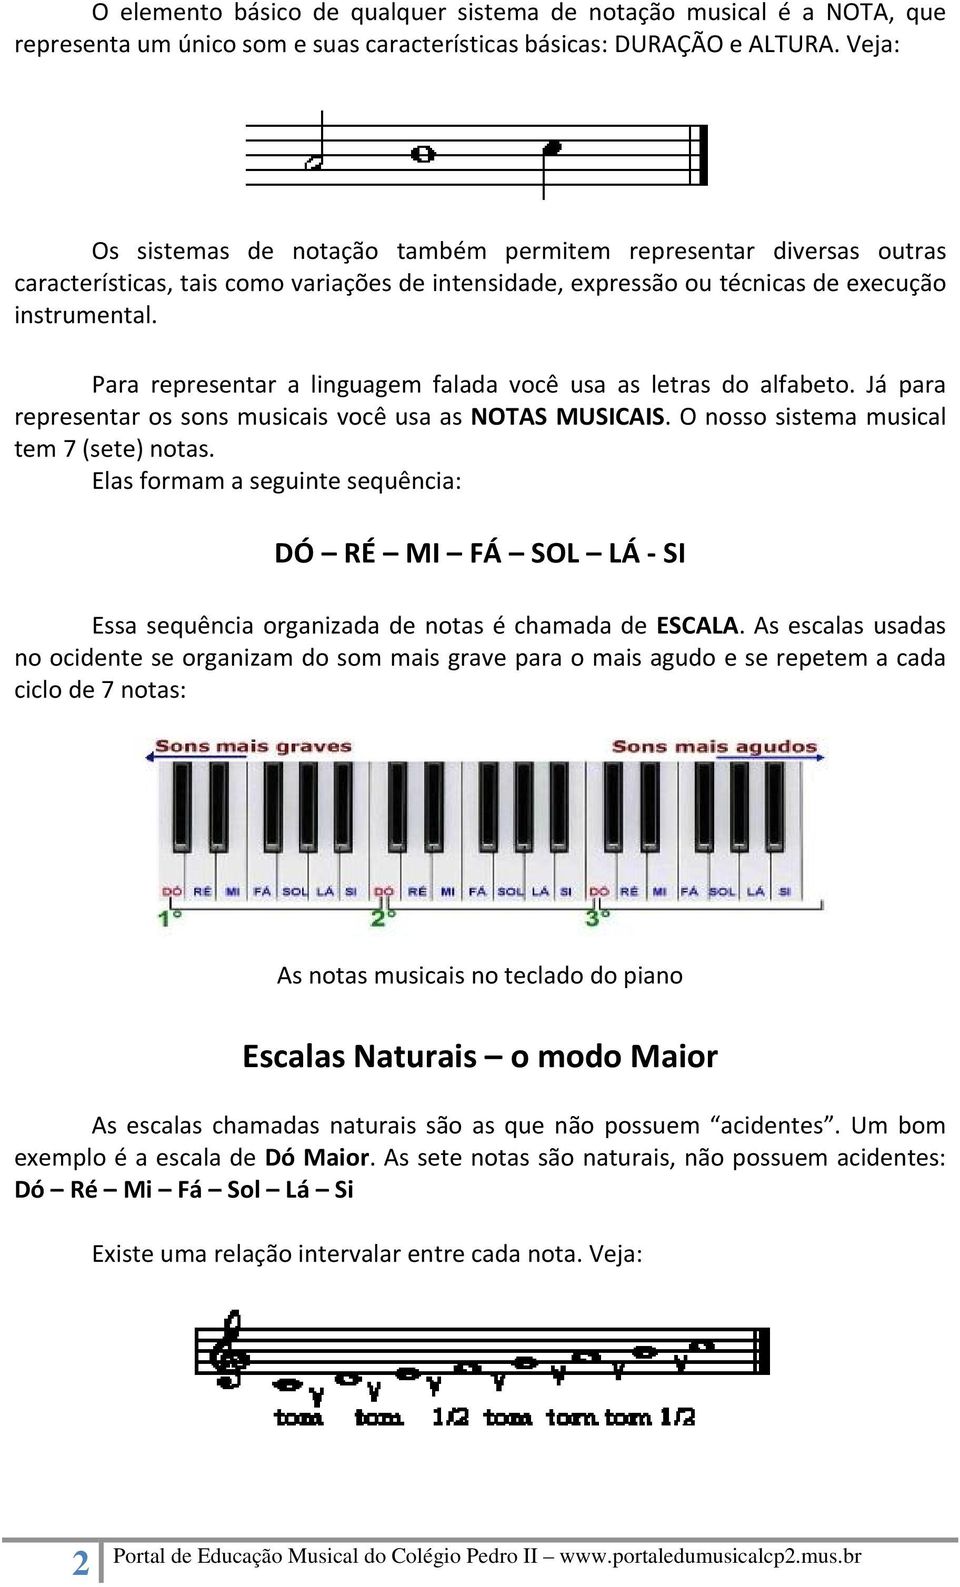 Para representar a linguagem falada você usa as letras do alfabeto. Já para representar os sons musicais você usa as NOTAS MUSICAIS. O nosso sistema musical tem 7 (sete) notas.